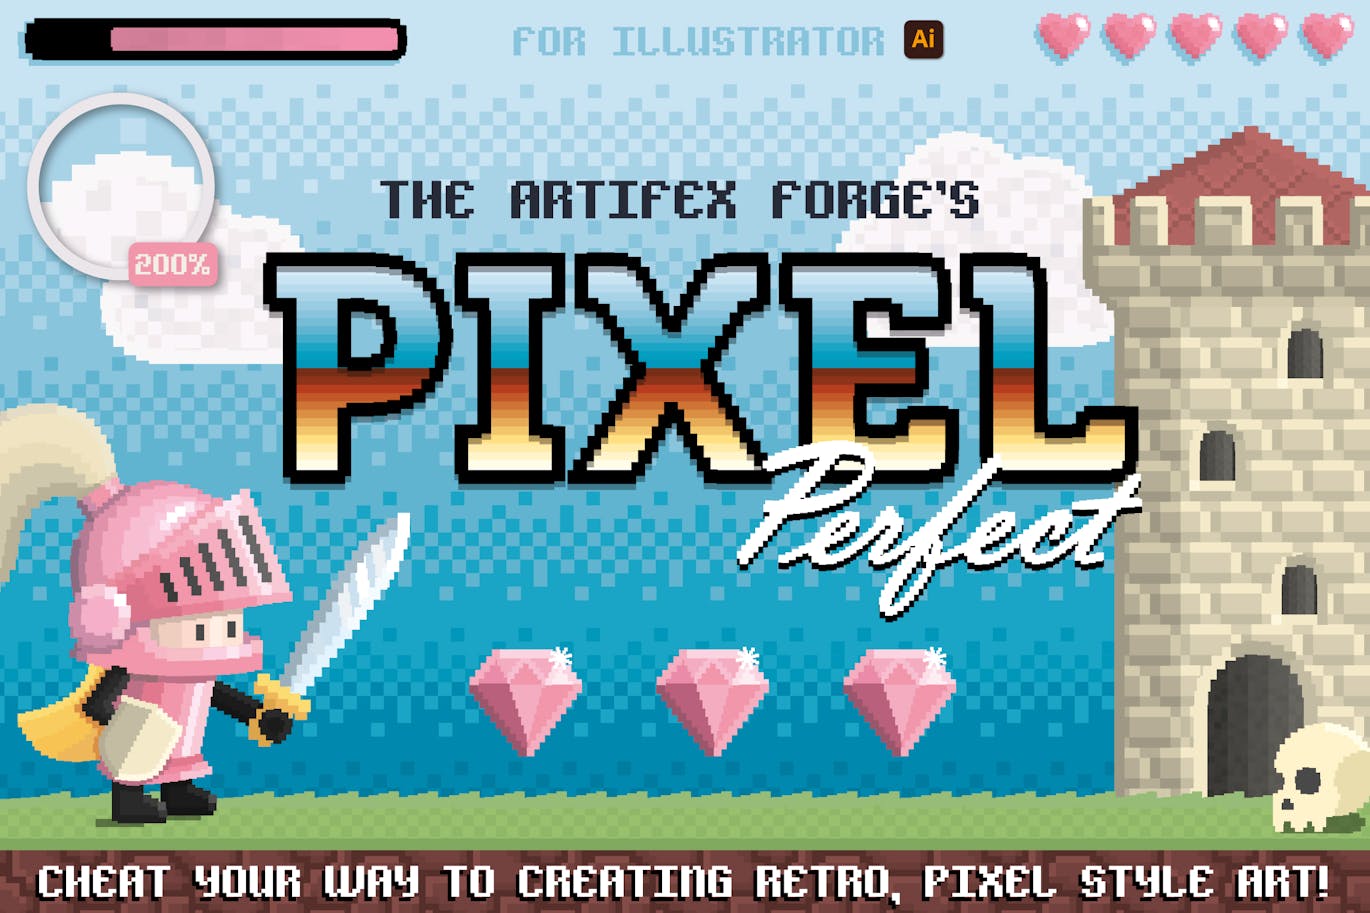 复古像素画笔和图案纹理 Pixel Perfect-8-bit Tool Kit